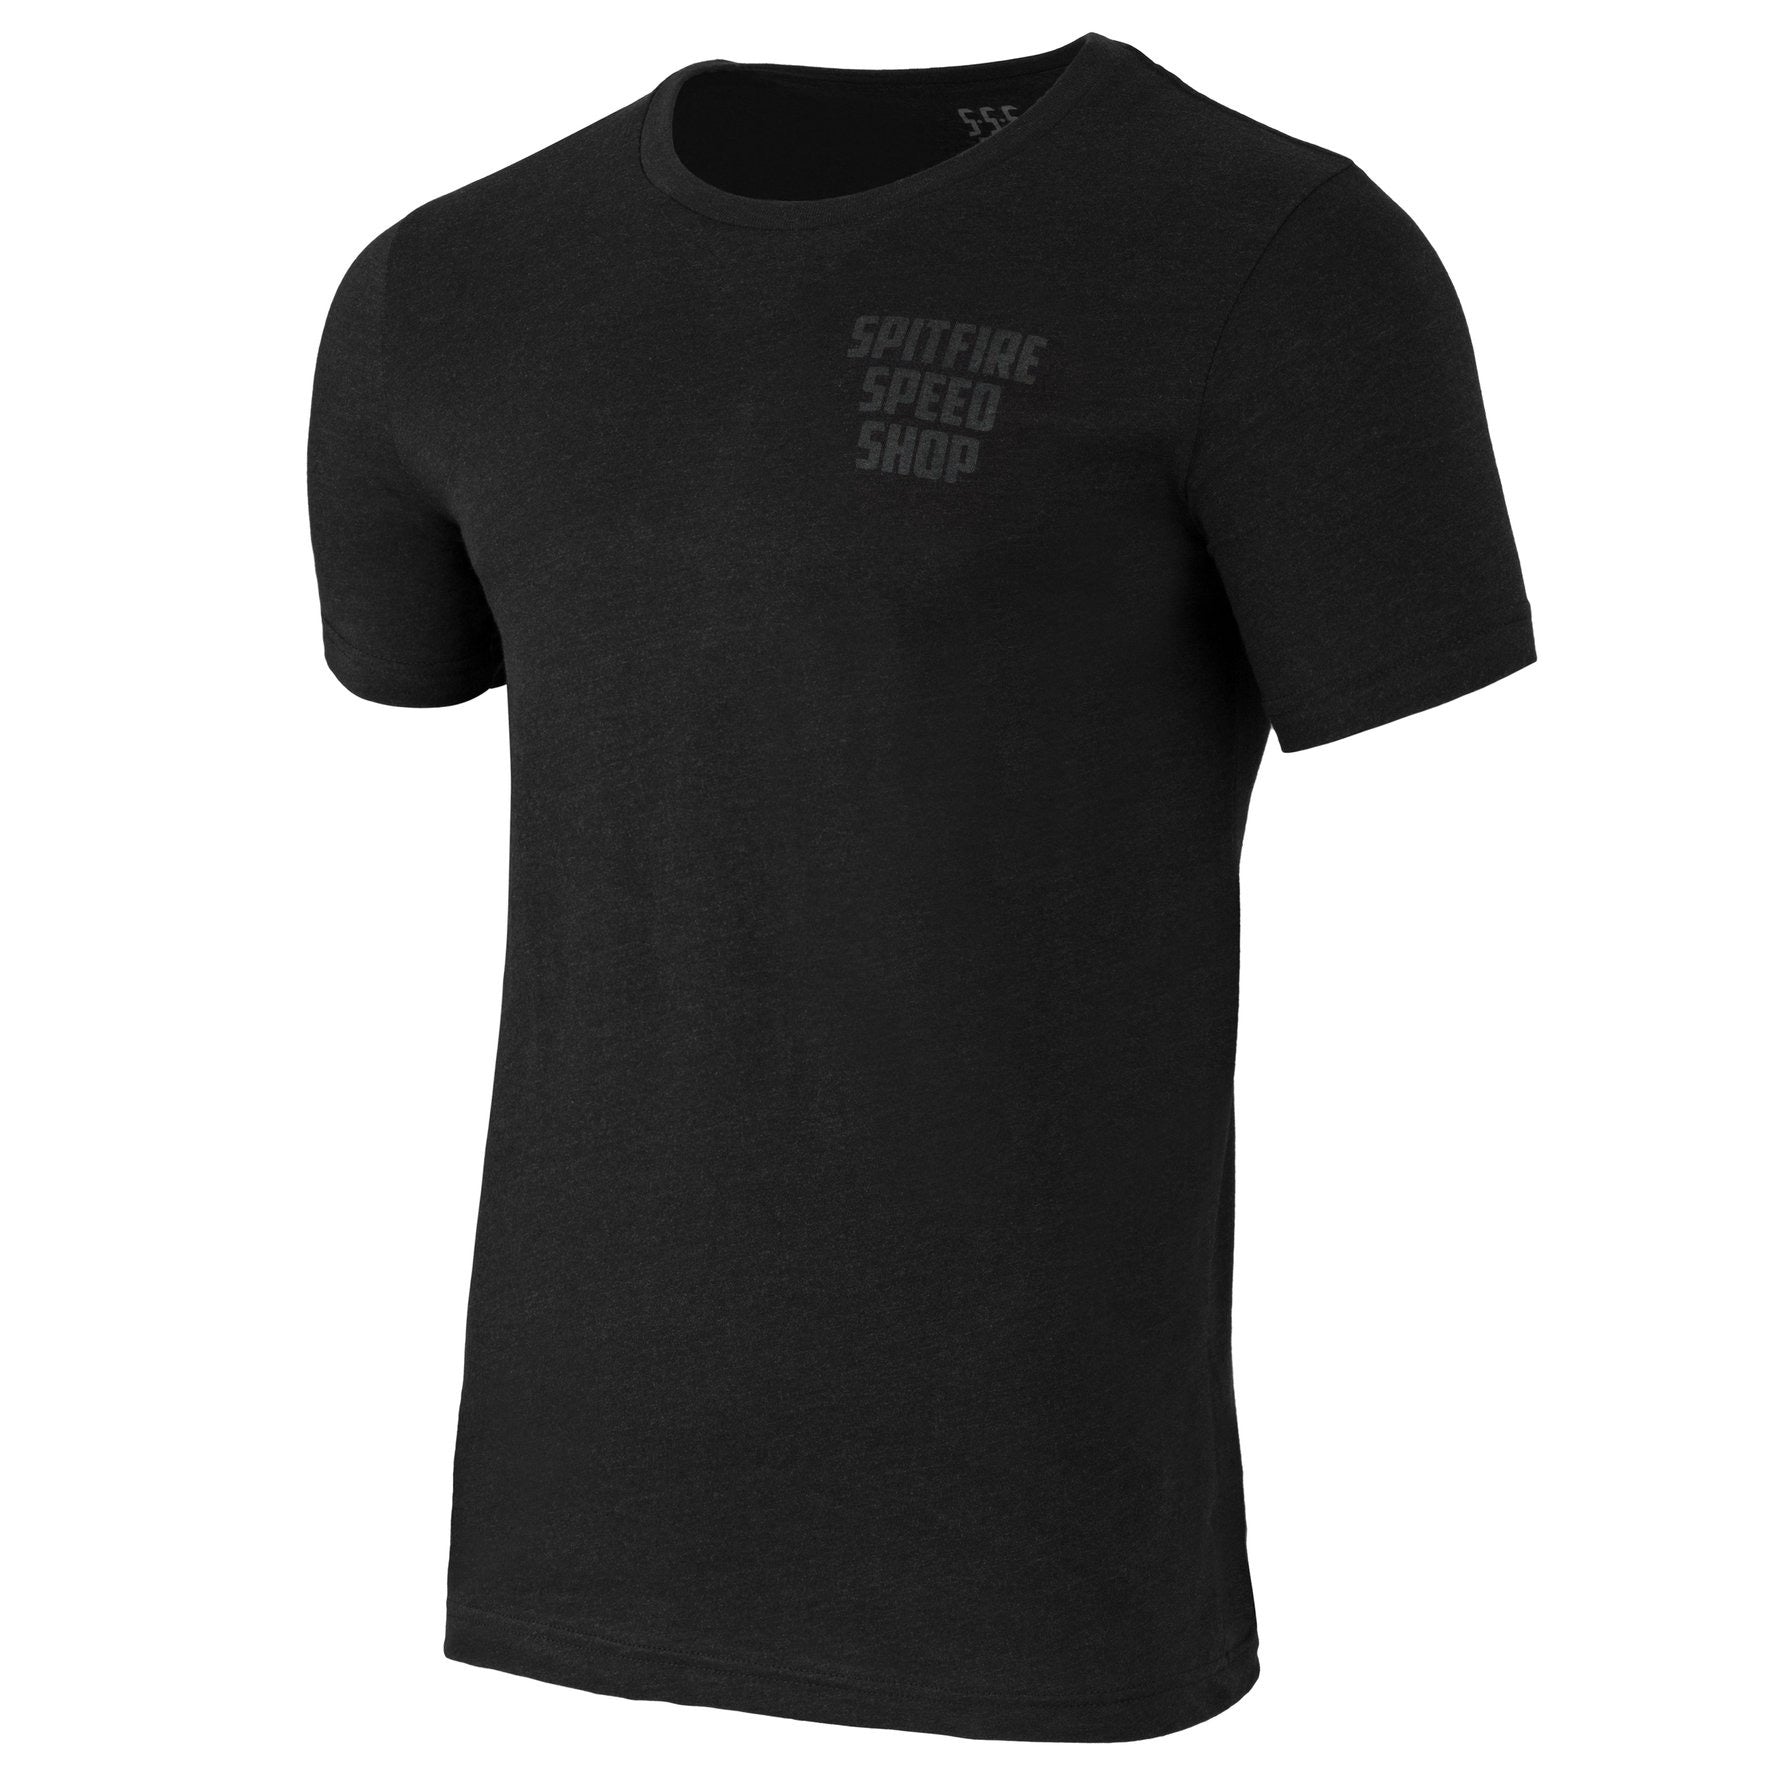 Spitfire Black T-Shirt With Black Logo